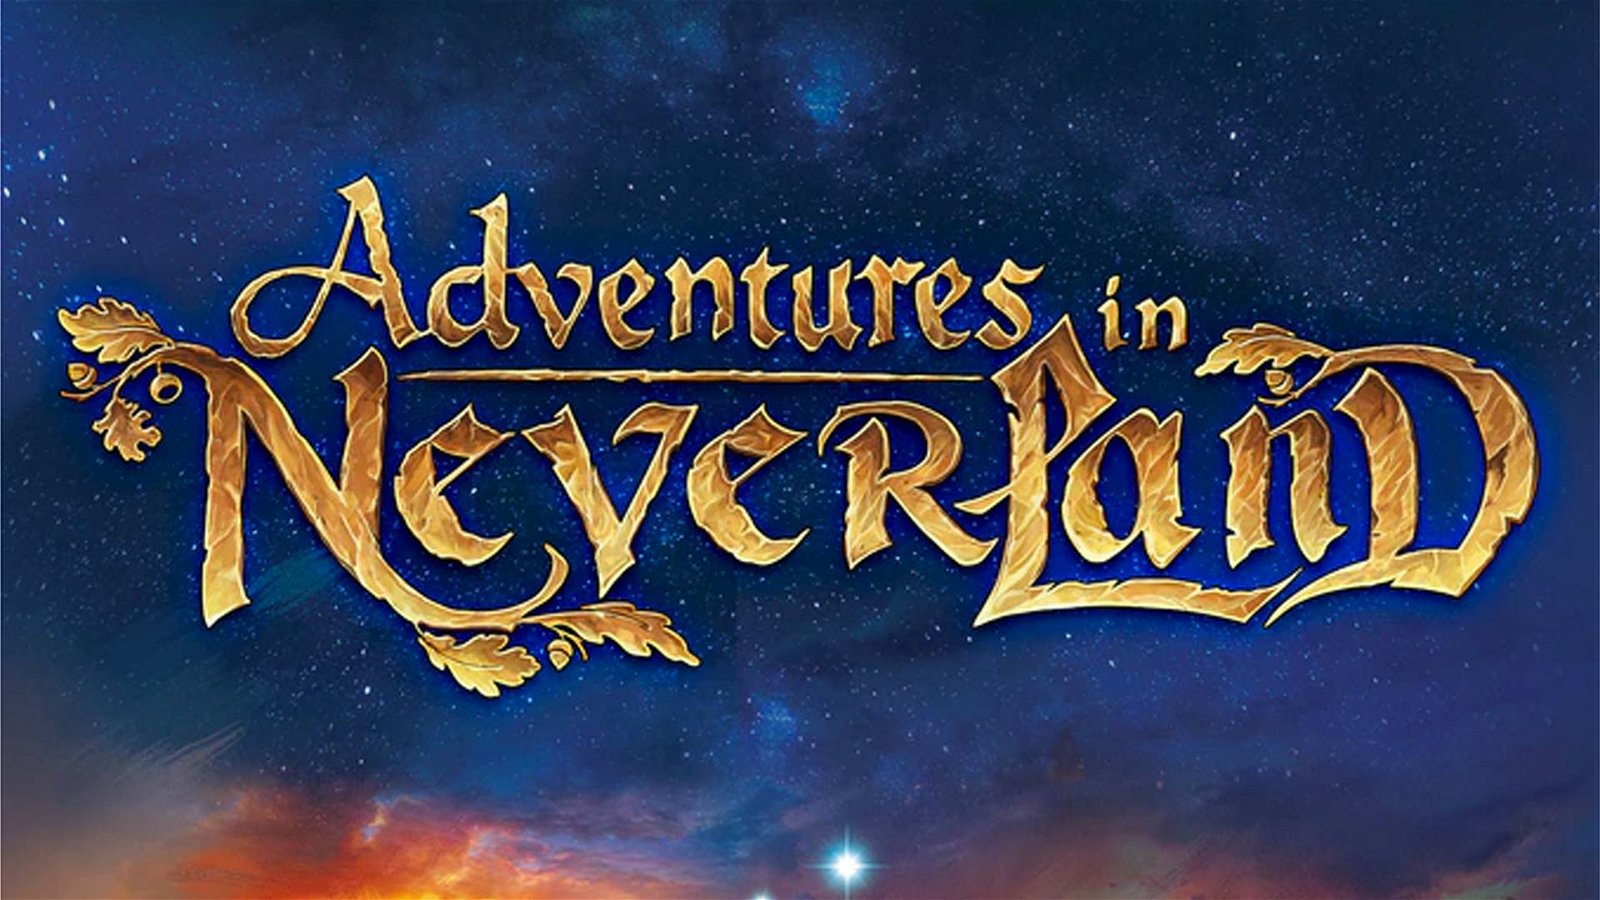 Immagine di Adventures in Neverland, su Kickstarter approda il gioco su Peter Pan